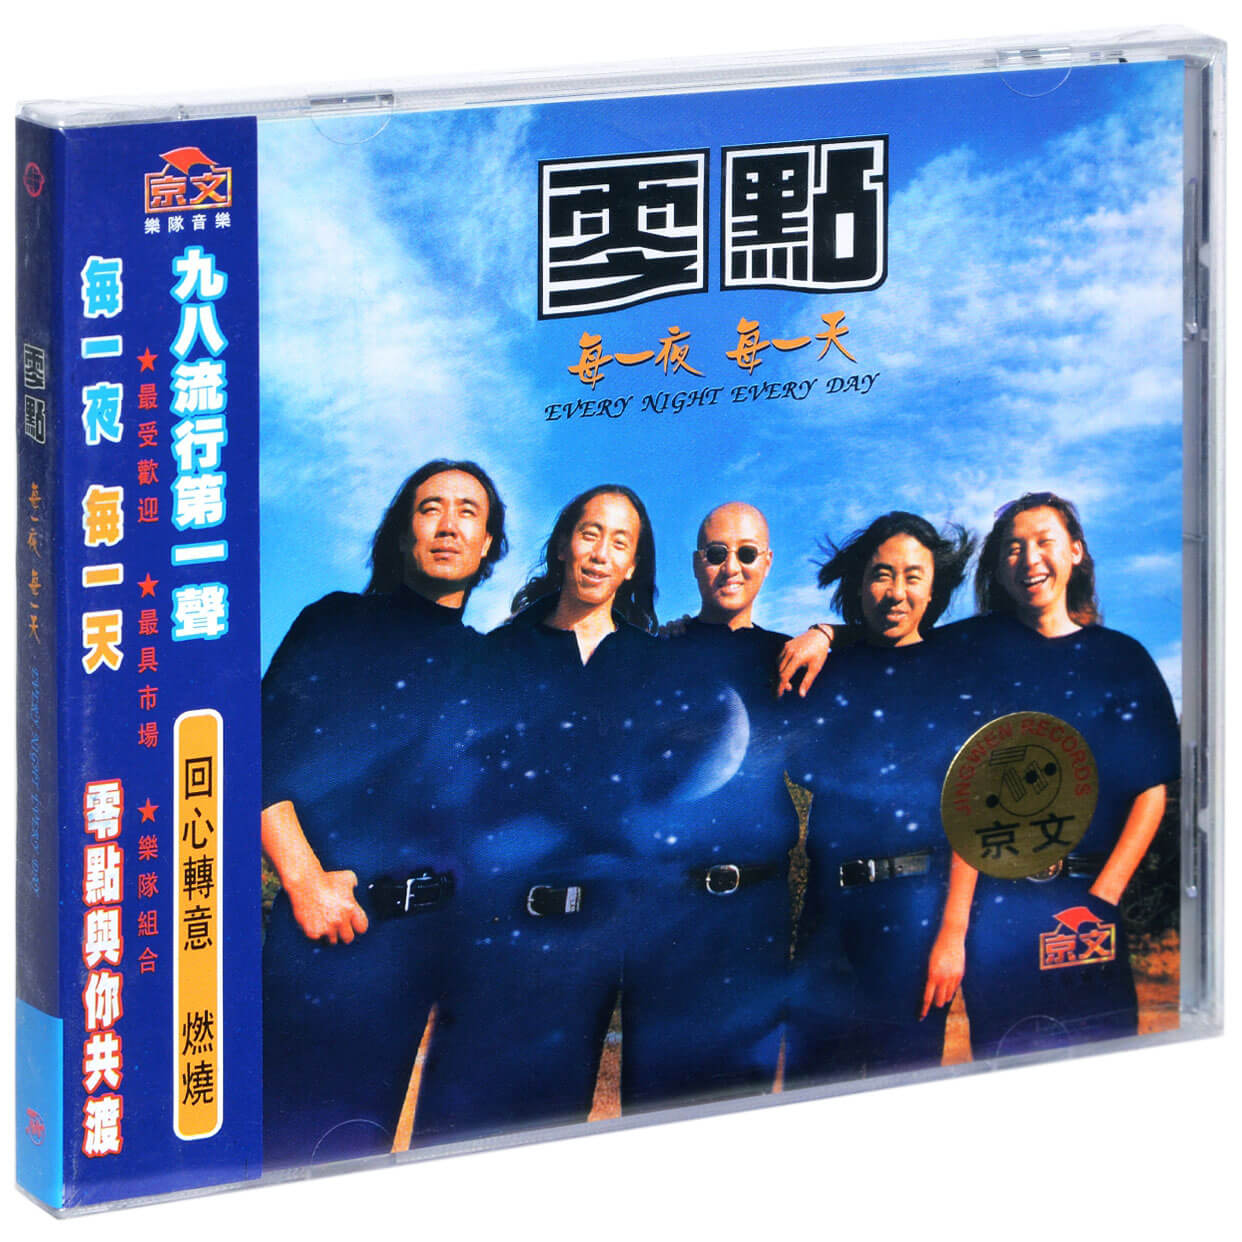 京文唱片 零点乐队 每夜每天 第三张专辑CD+歌词本 车载碟 周晓欧